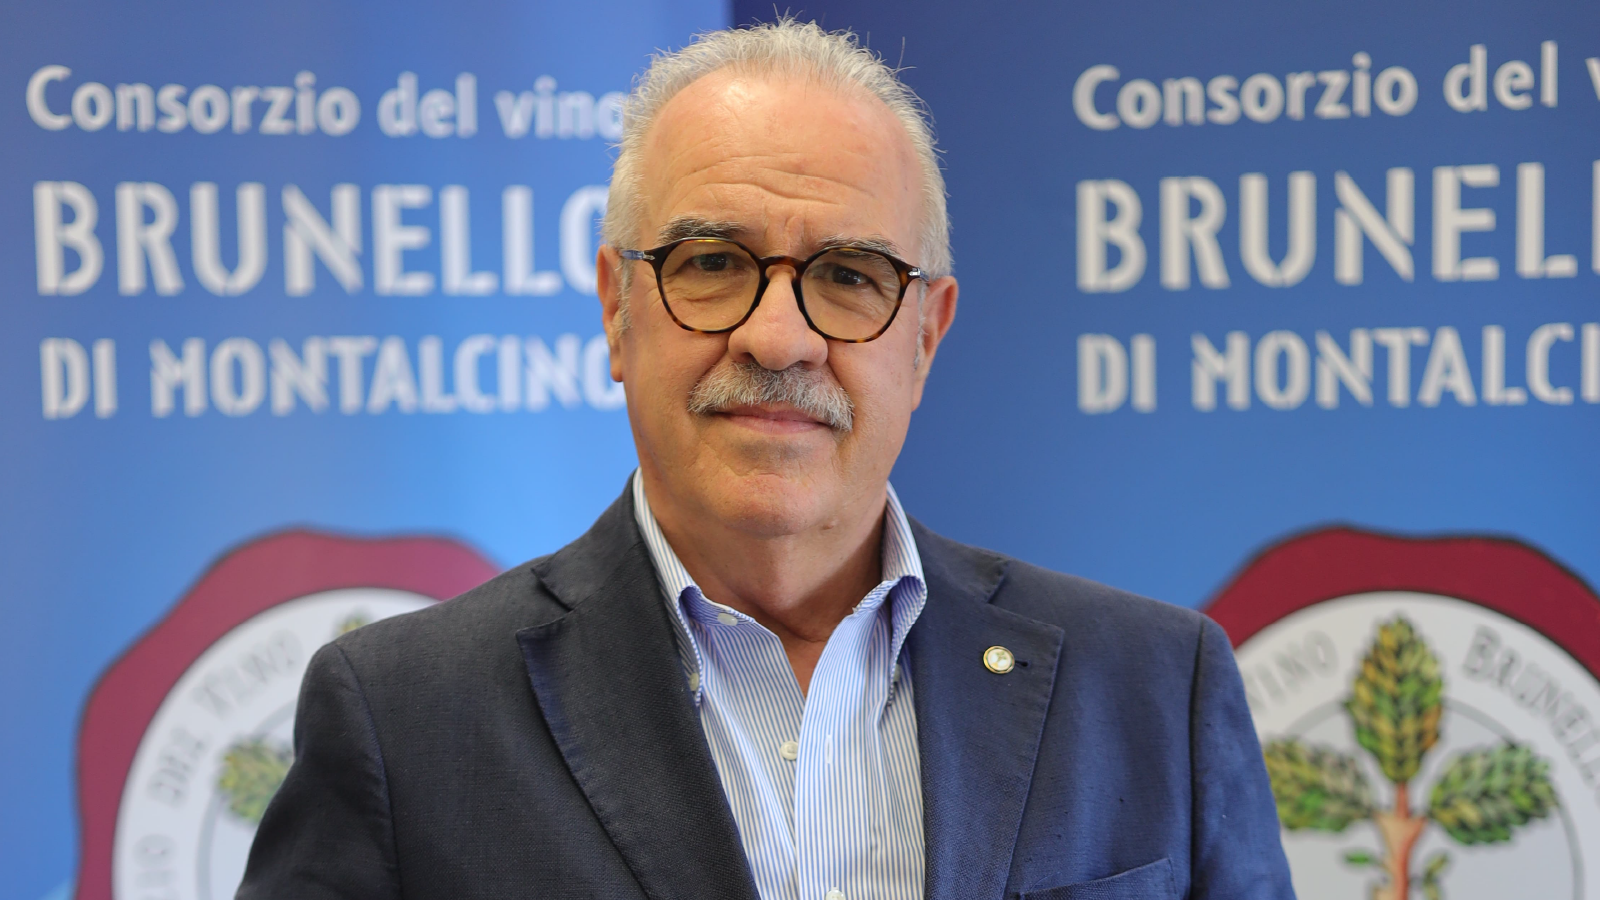 Le président du consortium Fabrizio Bindocci a communiqué sur les ventes du Rosso di Montalcino. Photo: Consortium del Brunello di Montalcino